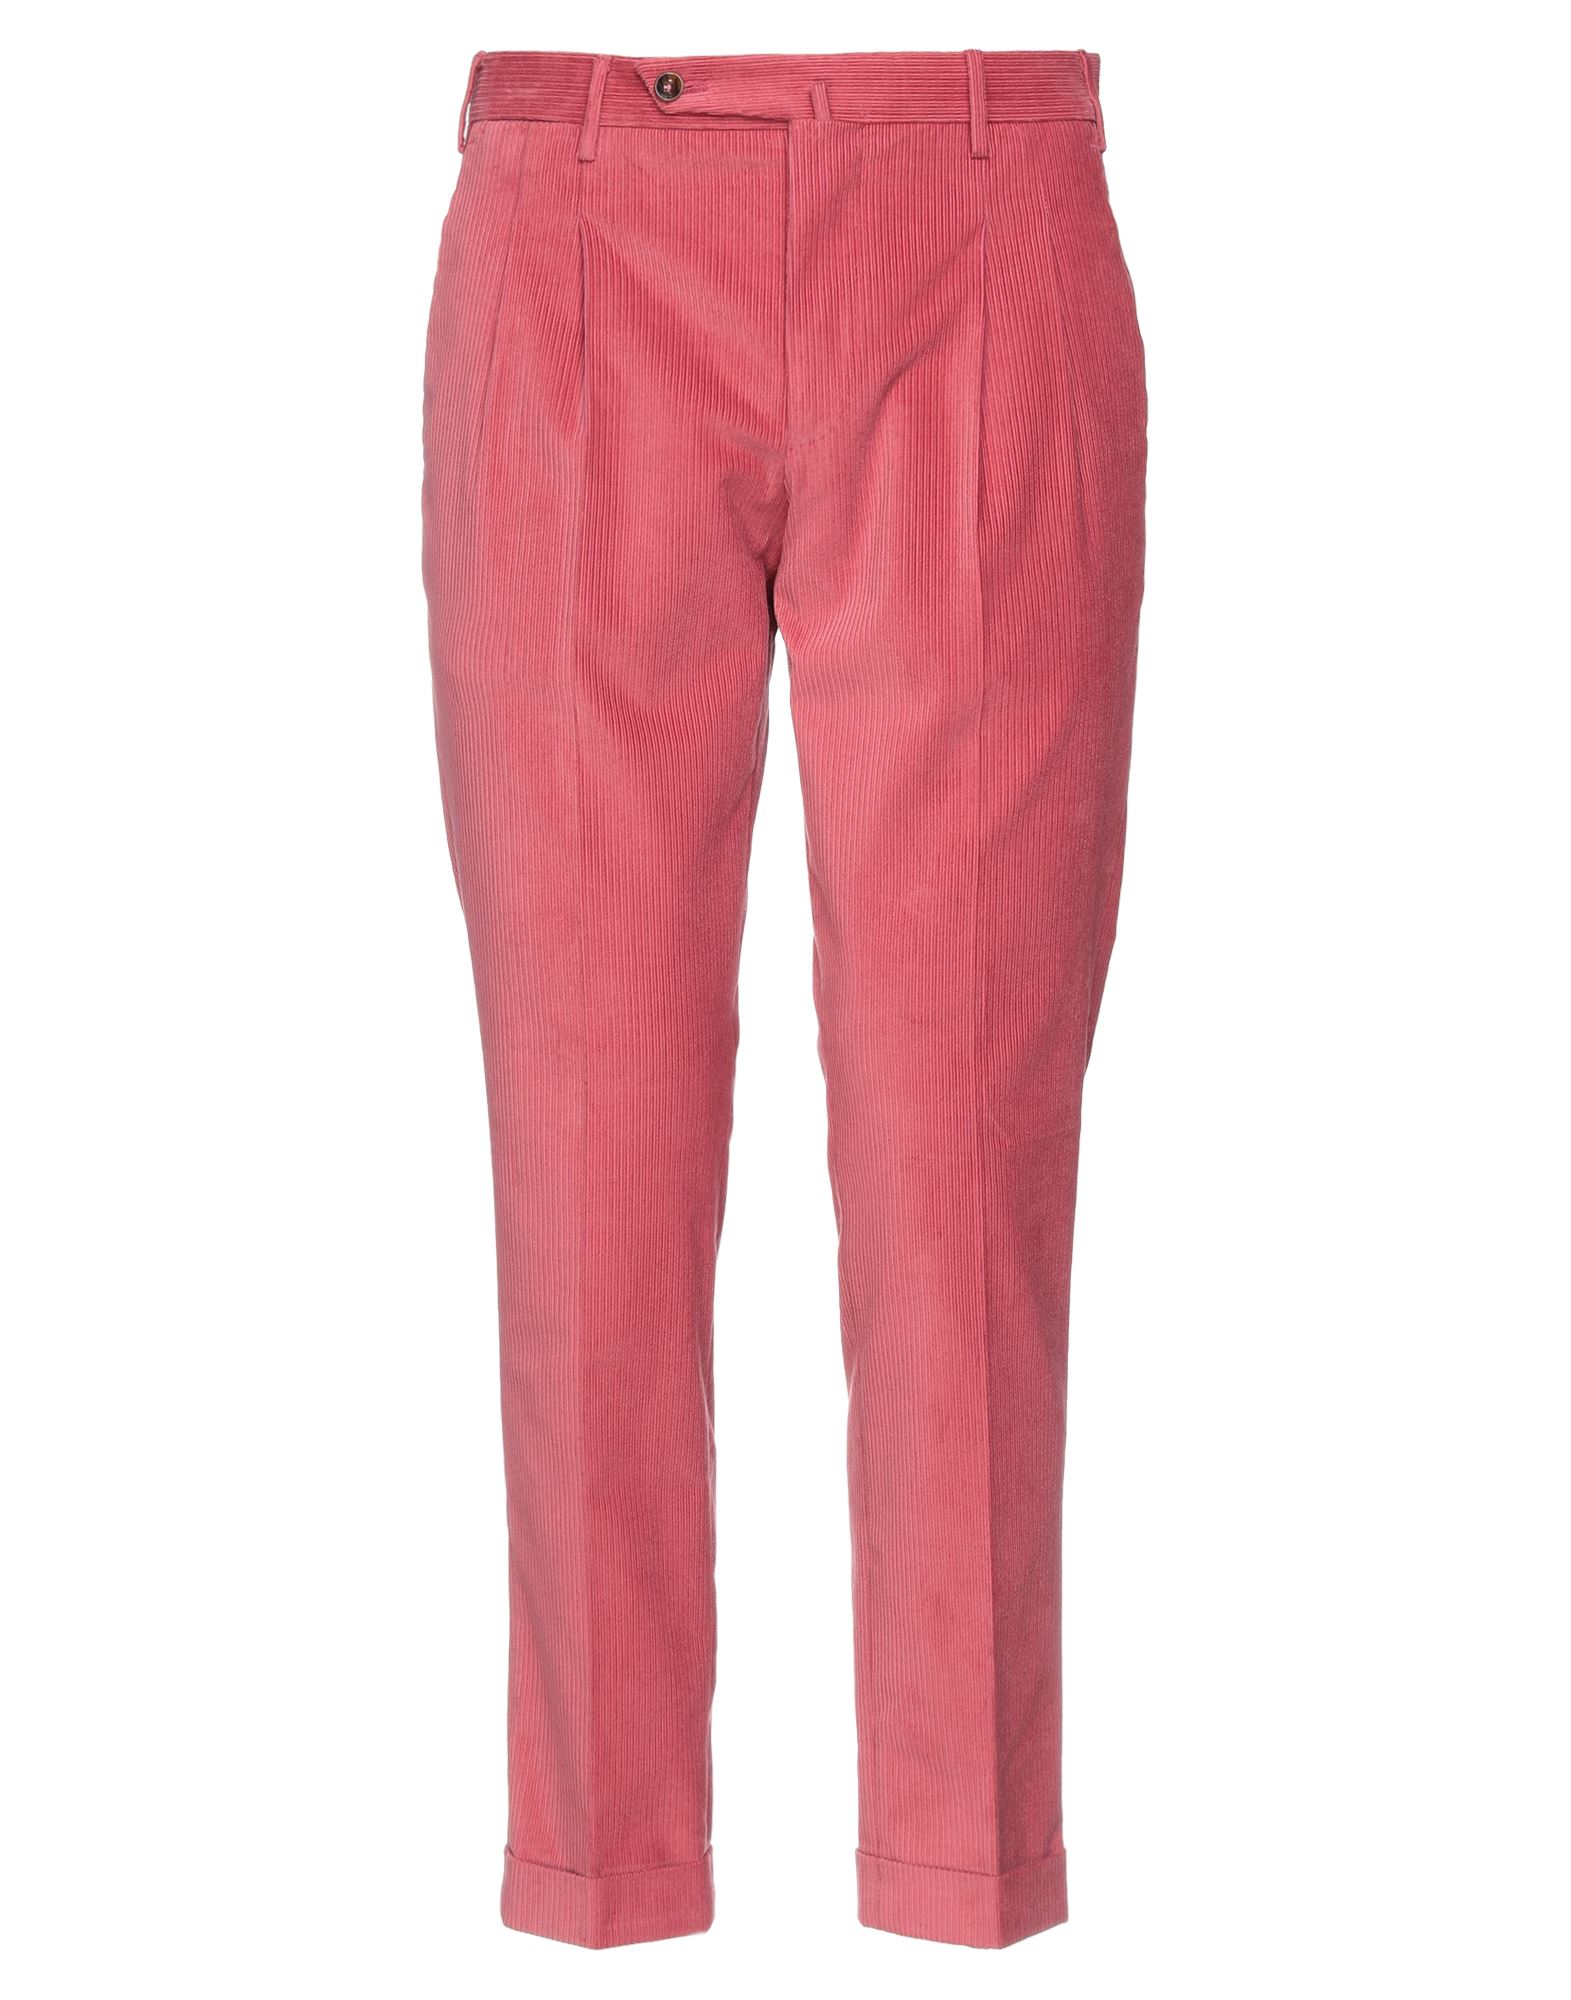 Pt Torino Pants In Pastel Pink